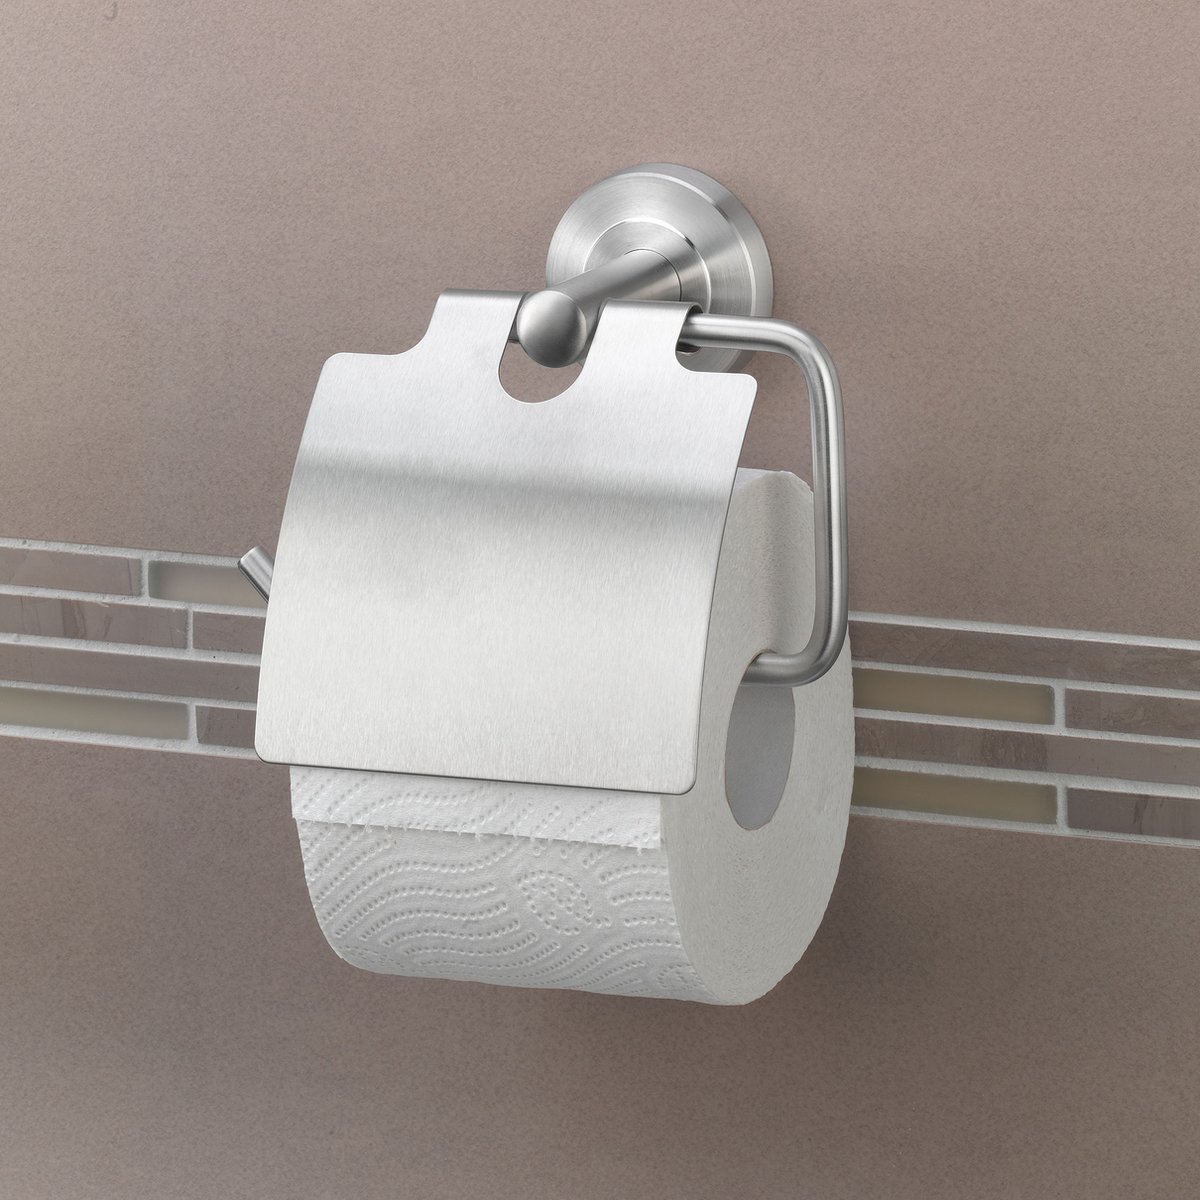 AMARE - wc-papierhouder - zonder boren - roestvrij staal - badkamerdecoratie - gemakkelijk schoon te maken - duurzaam.